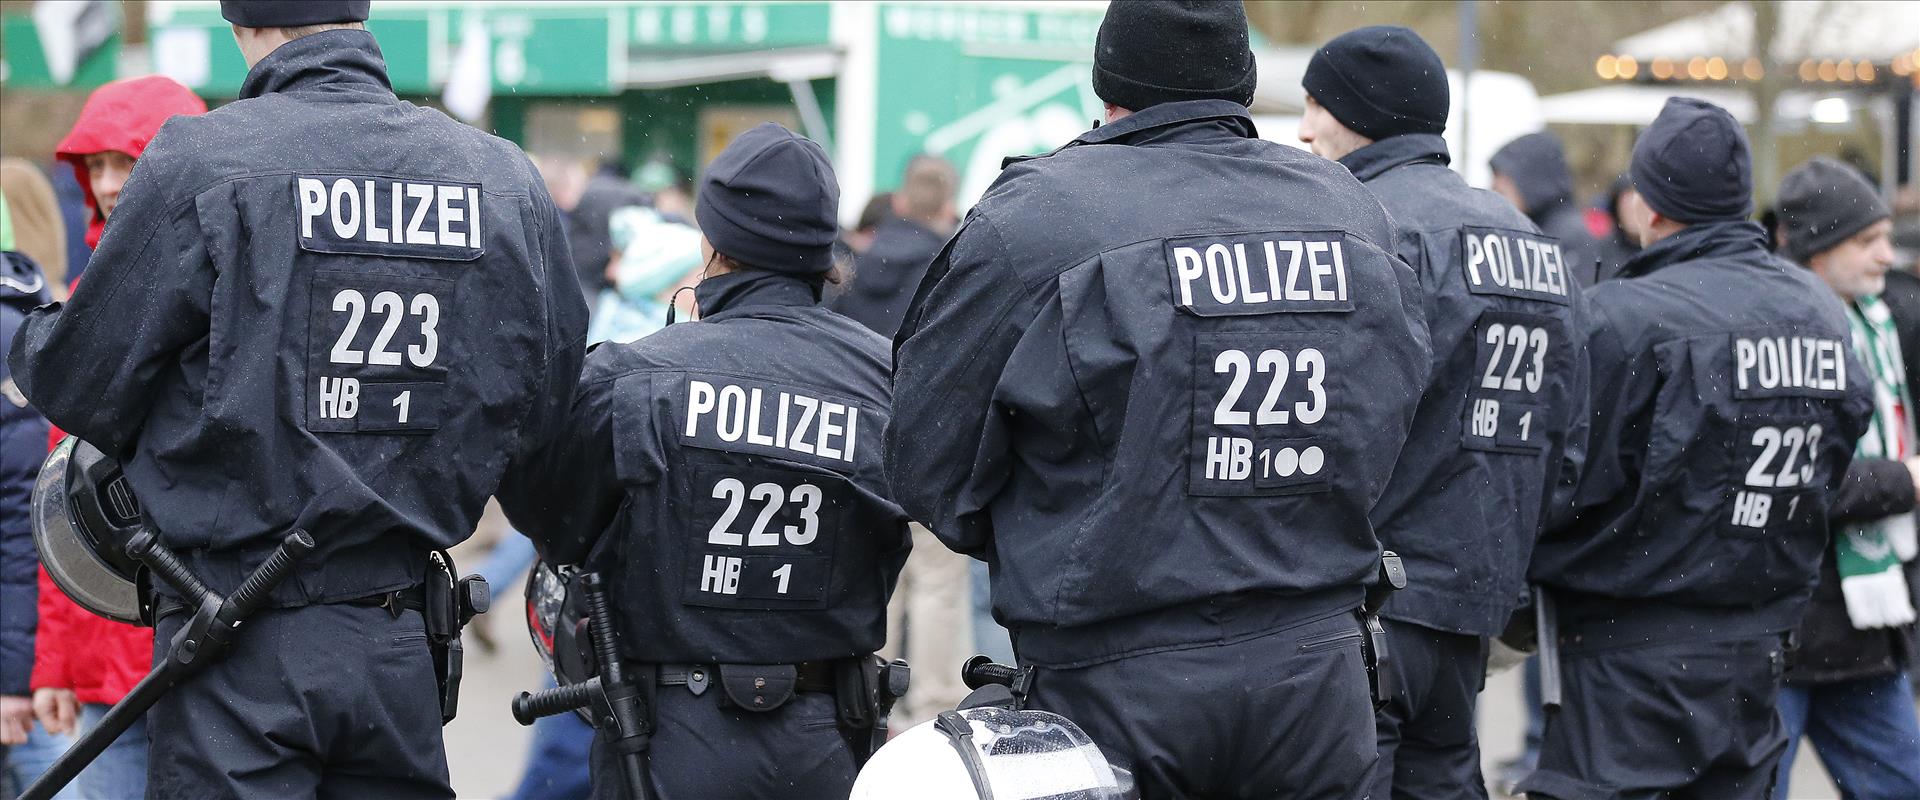 כוחות משטרה בגרמניה